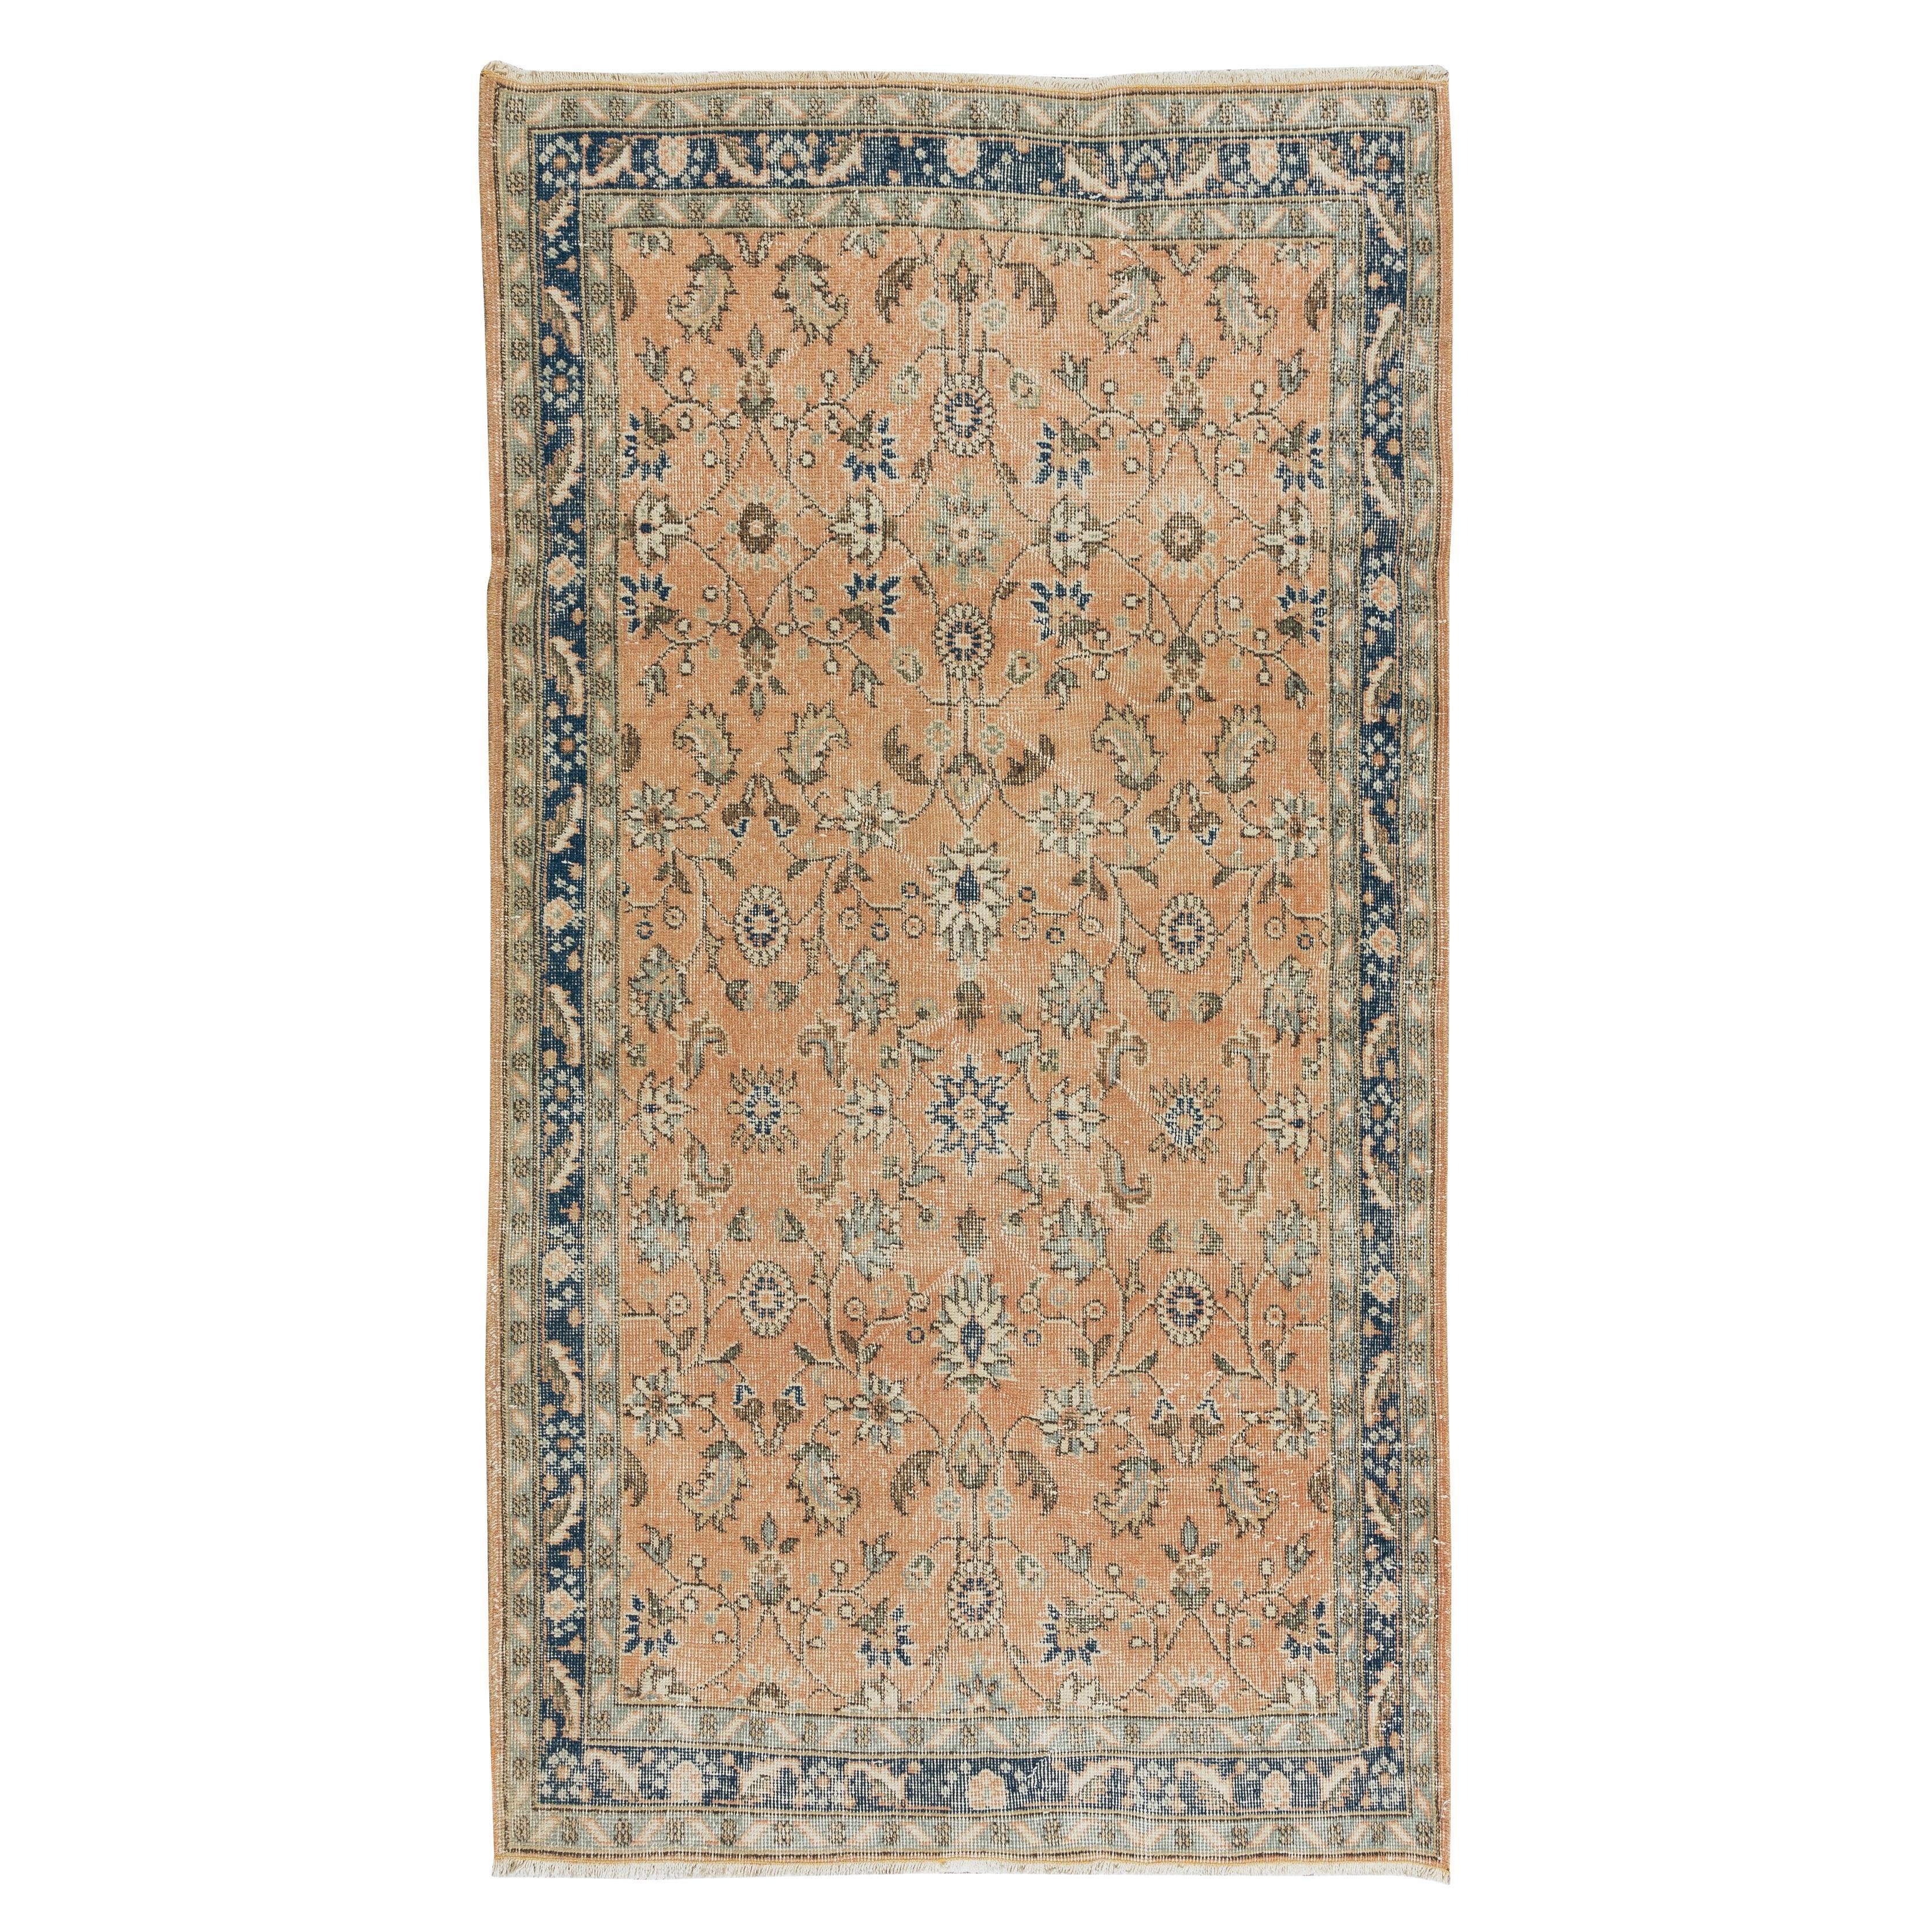 3,8x6,8 Ft Handgefertigter türkischer Teppich mit Blumenmuster, authentischer Vintage-Wollteppich